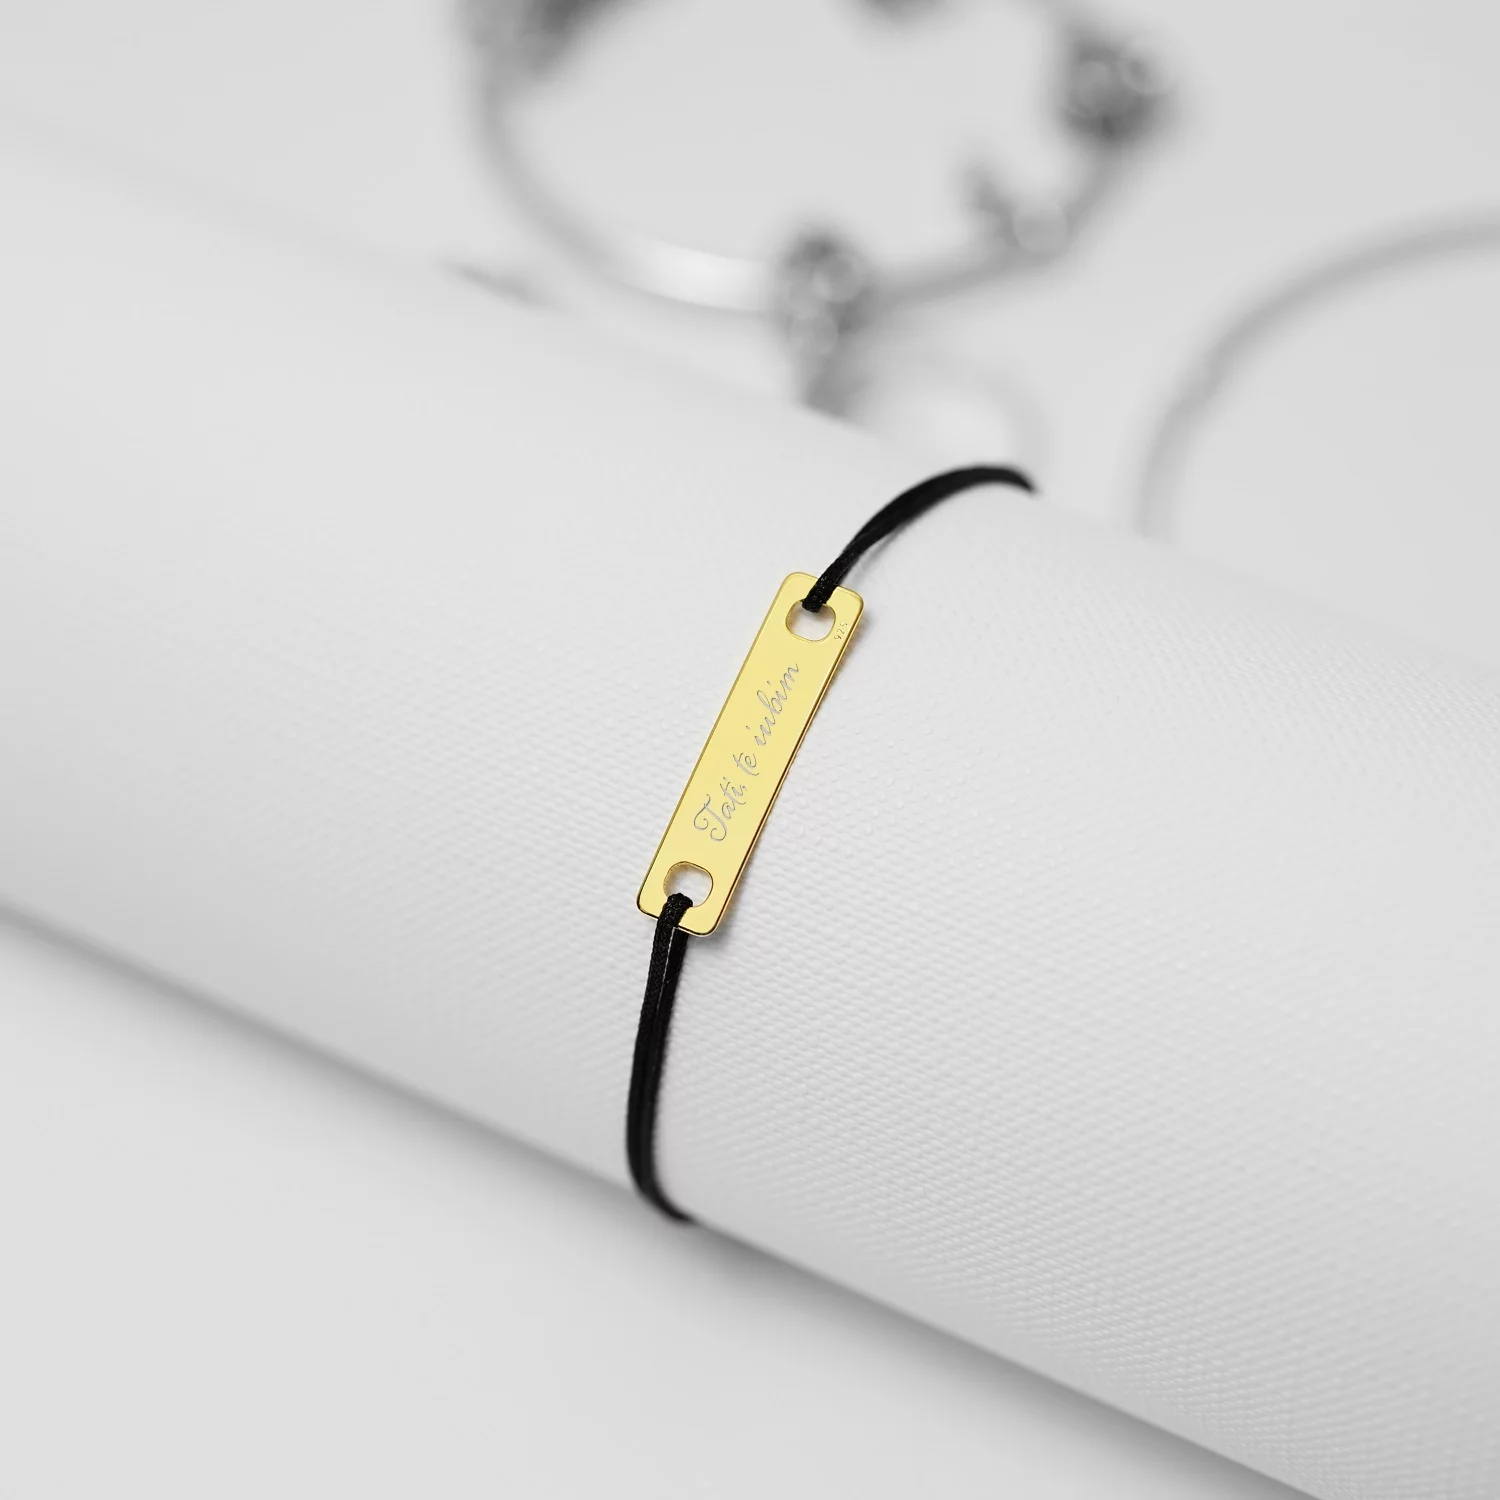 Bratara cu snur Placuta Golden din argint 25 mm personalizata cu text si simbol